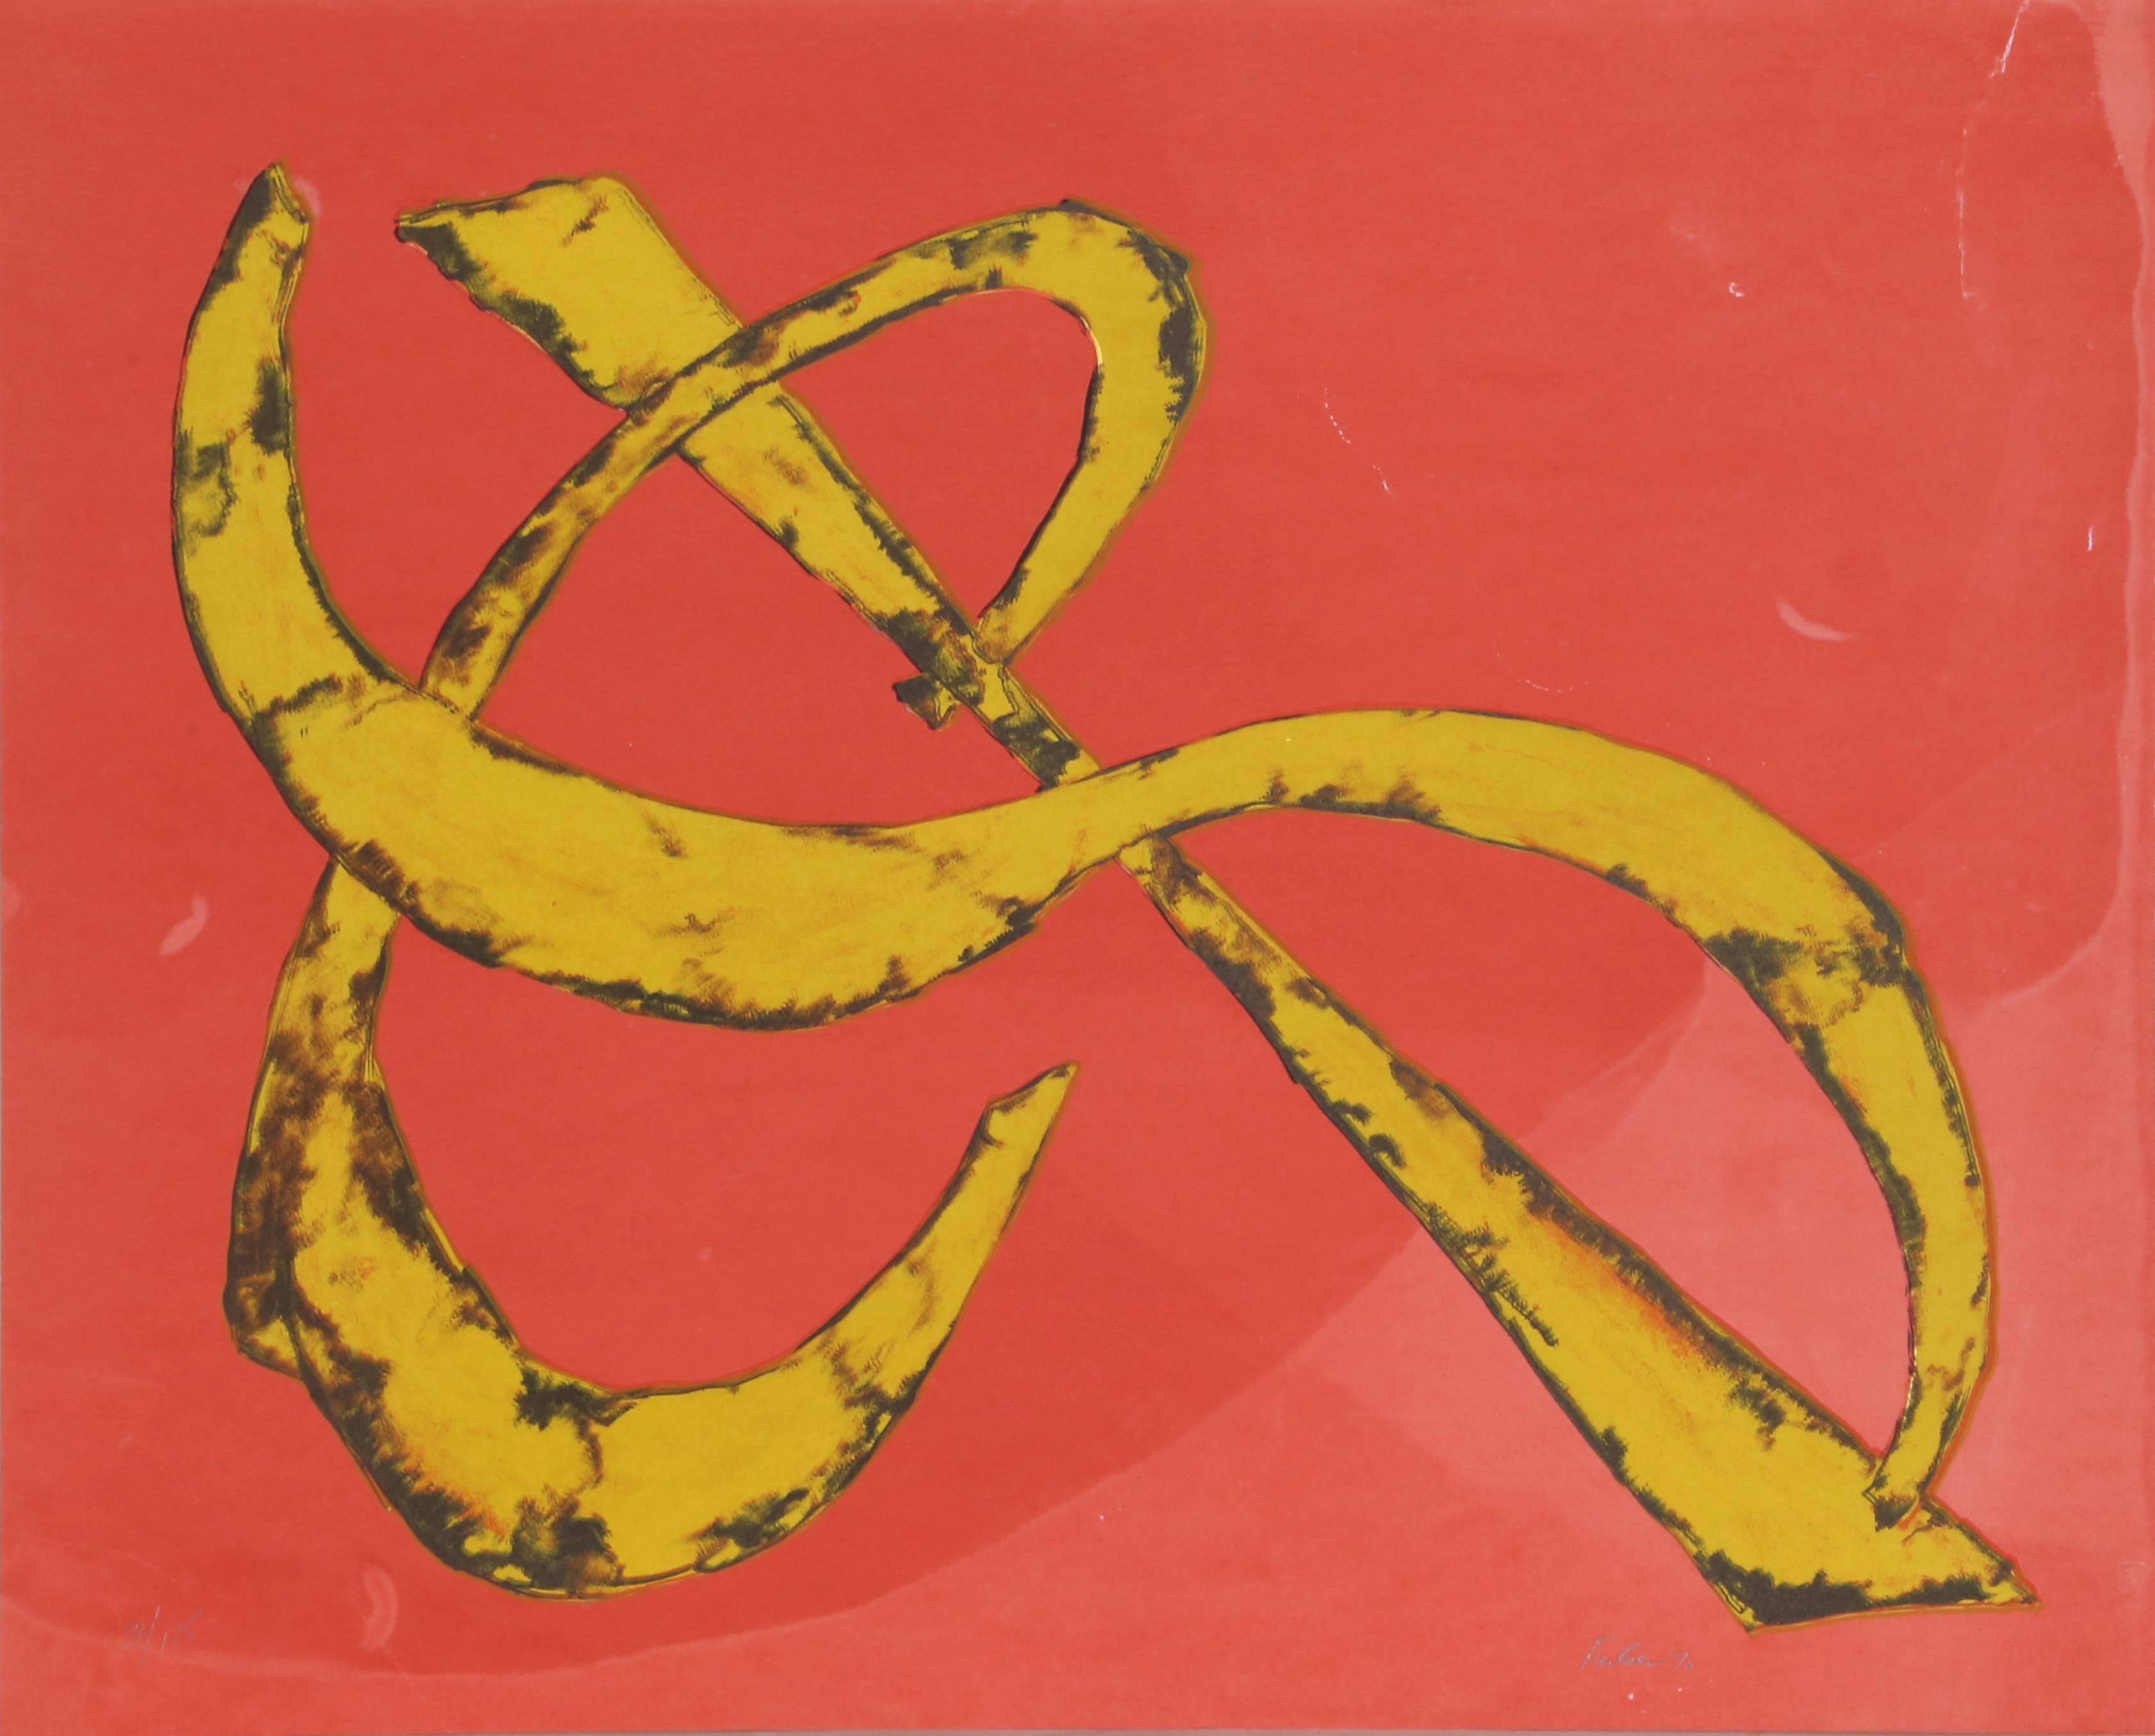 Artiste :	Herbert Ferber
Titre :	La paix du portefeuille de la paix
Année :	1970
Moyen :	Lithographie, signée et numérotée au crayon
Edition :	175
Taille du papier :	21 x 26 pouces (53,34 x 66,04 cm)